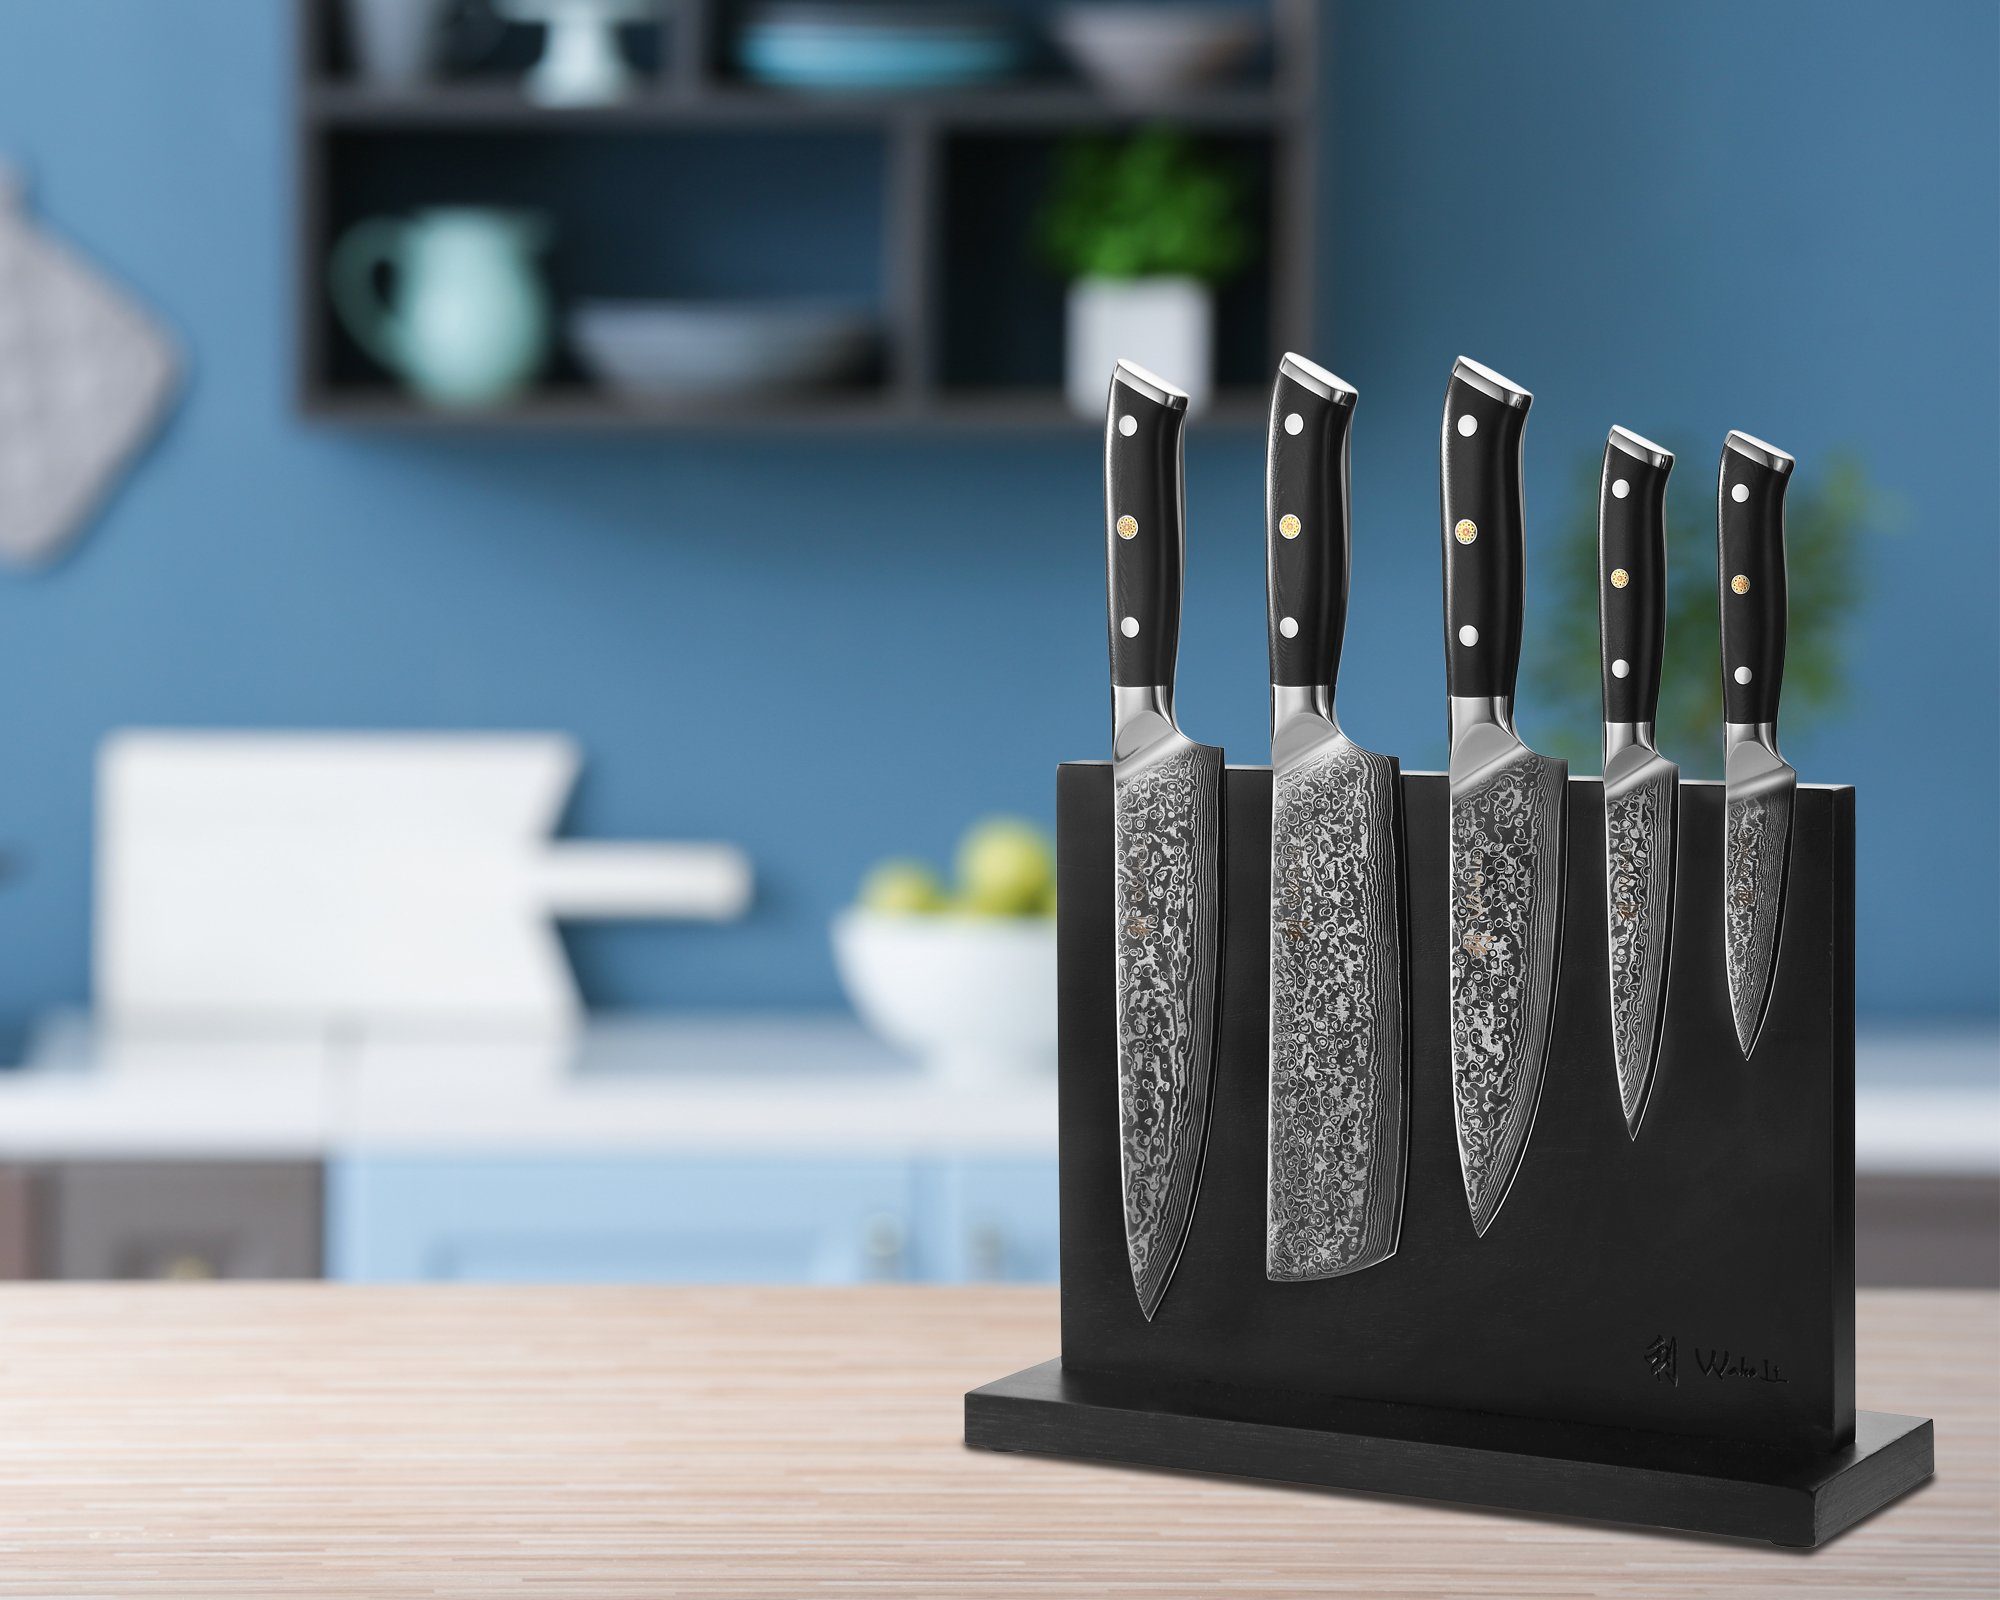 Wakoli & Küchenmesser Cuisine Magnet-Messerblock I 5 magnetischer Messerblock Elite